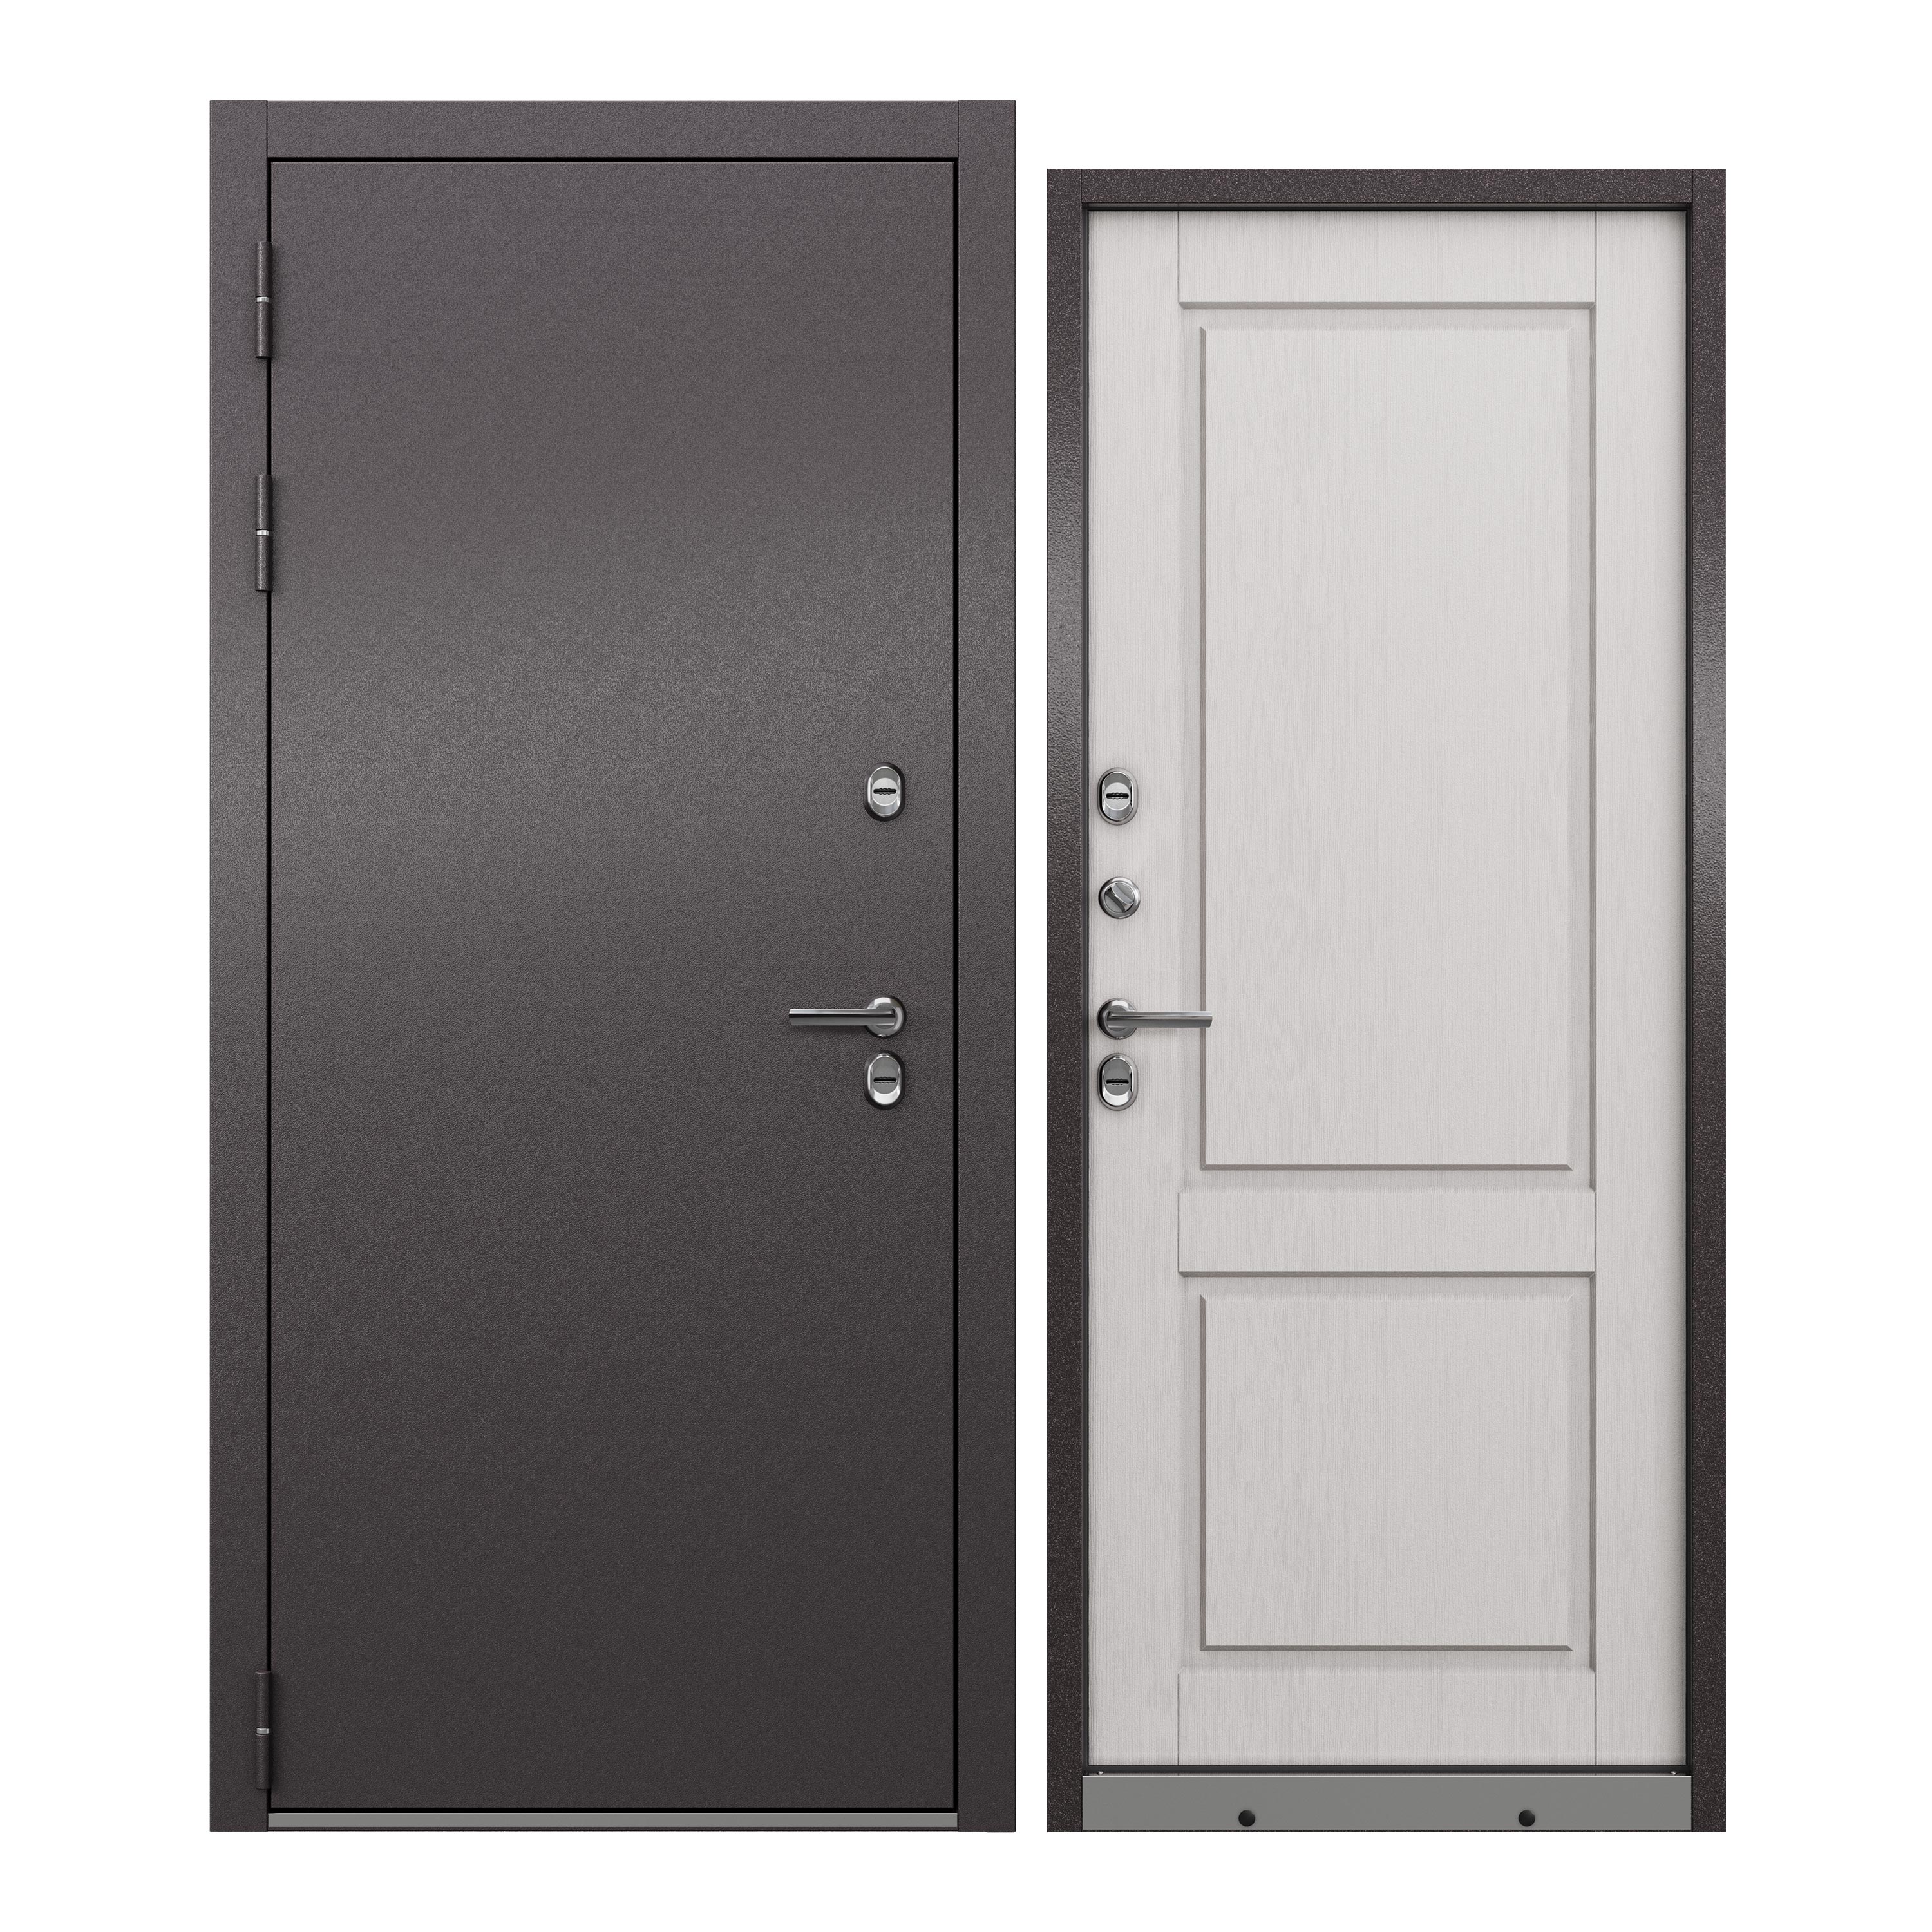 Дверь входная в дом ProLine металлическая Village Optimal 880х2050, левая, терморазрыв osram эпра qtp optimal 1х18 40